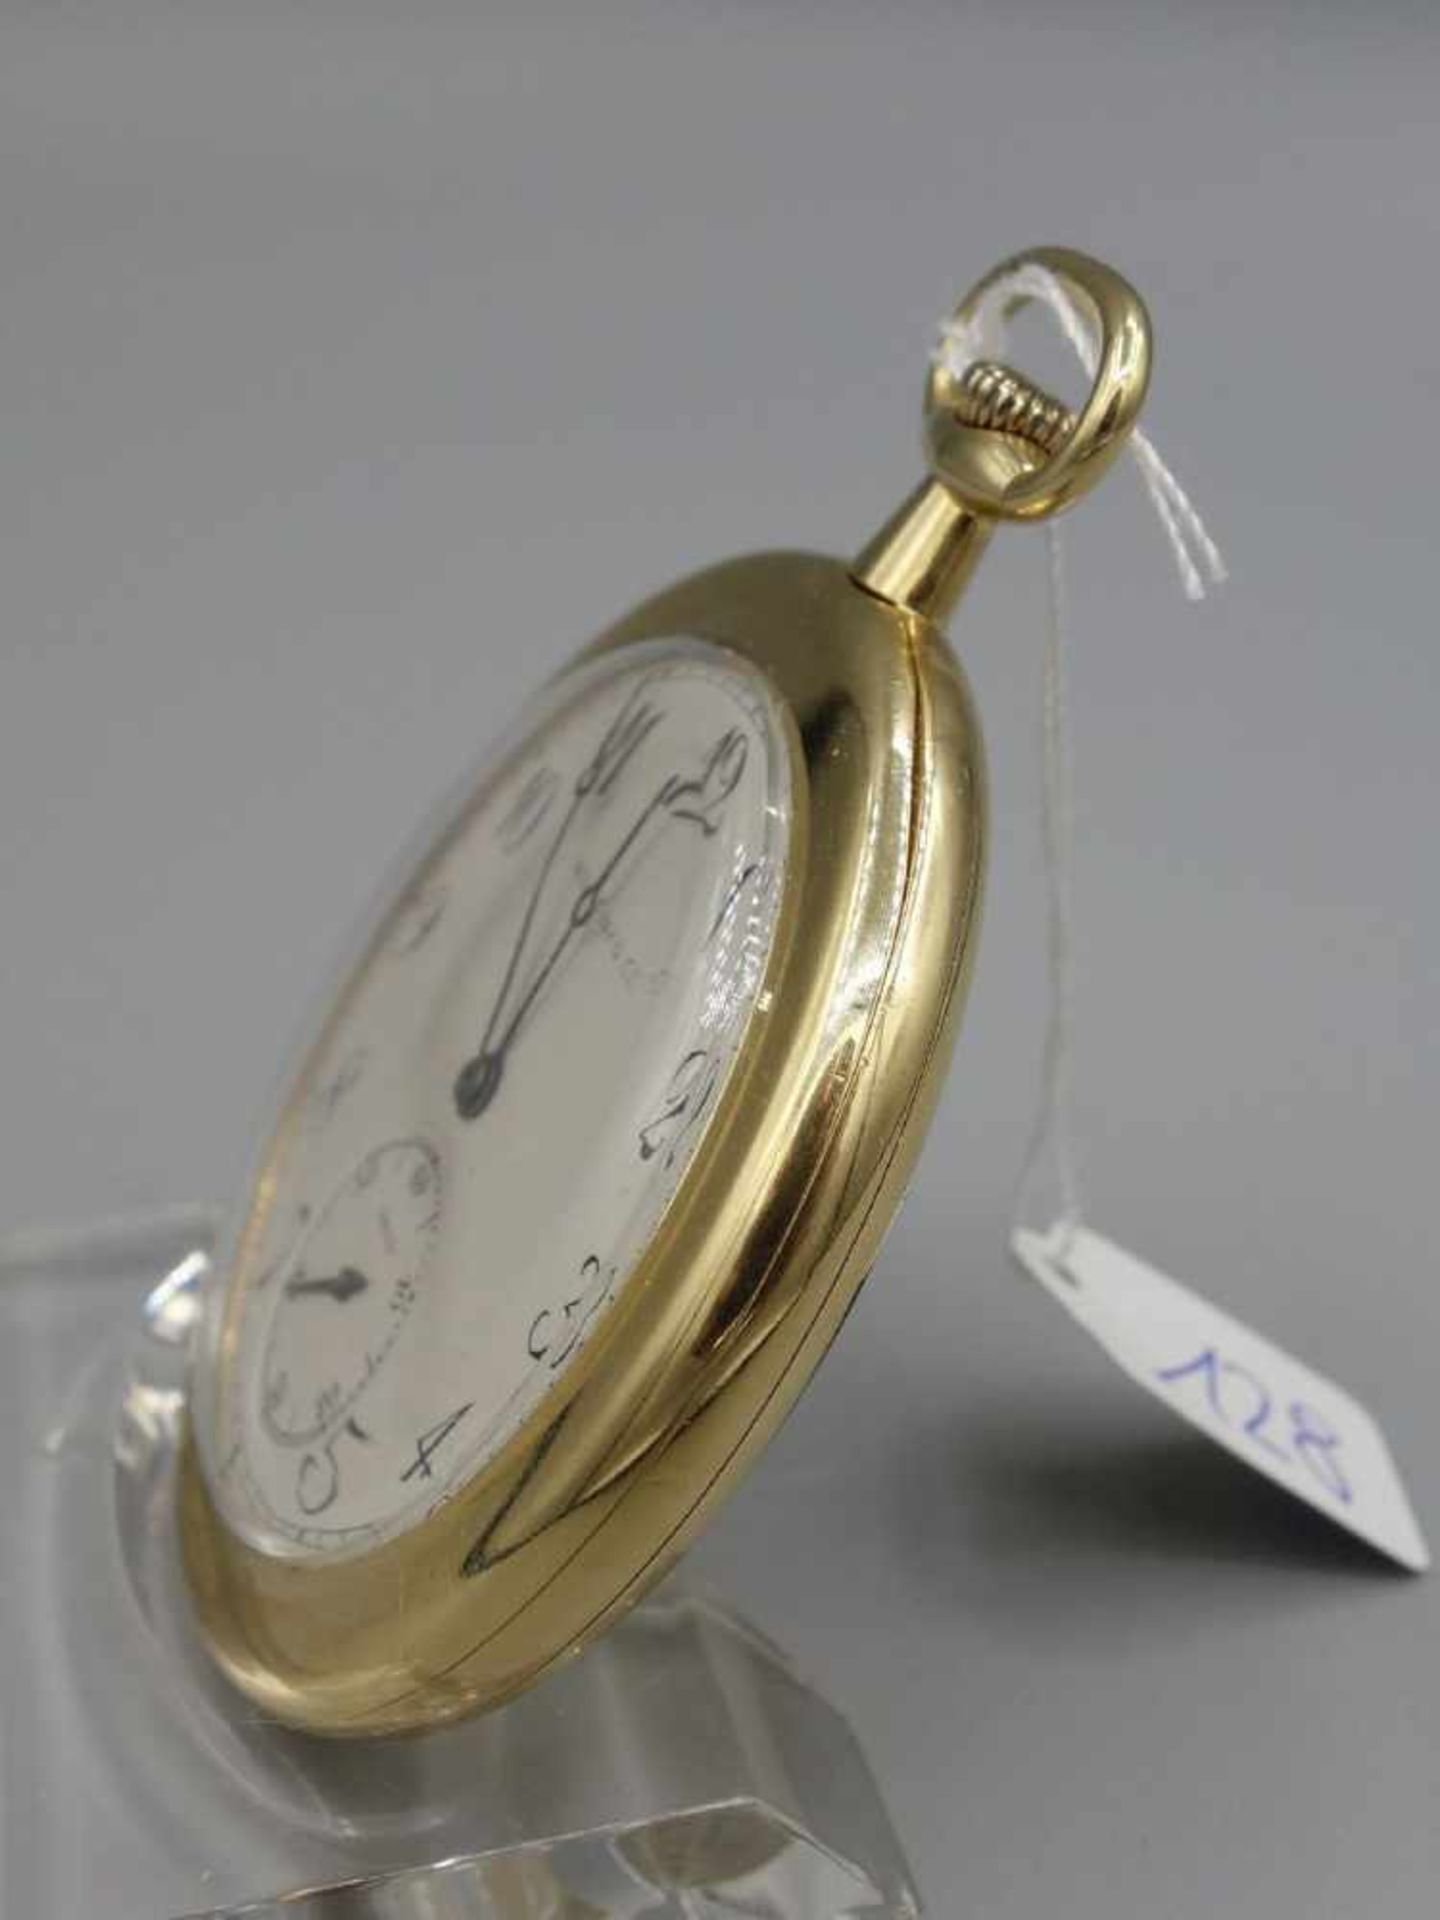 FLACHE TASCHENUHR MIT GOLDGEHÄUSE / golden half open face pocket watch, Handaufzug (Krone). - Bild 2 aus 8